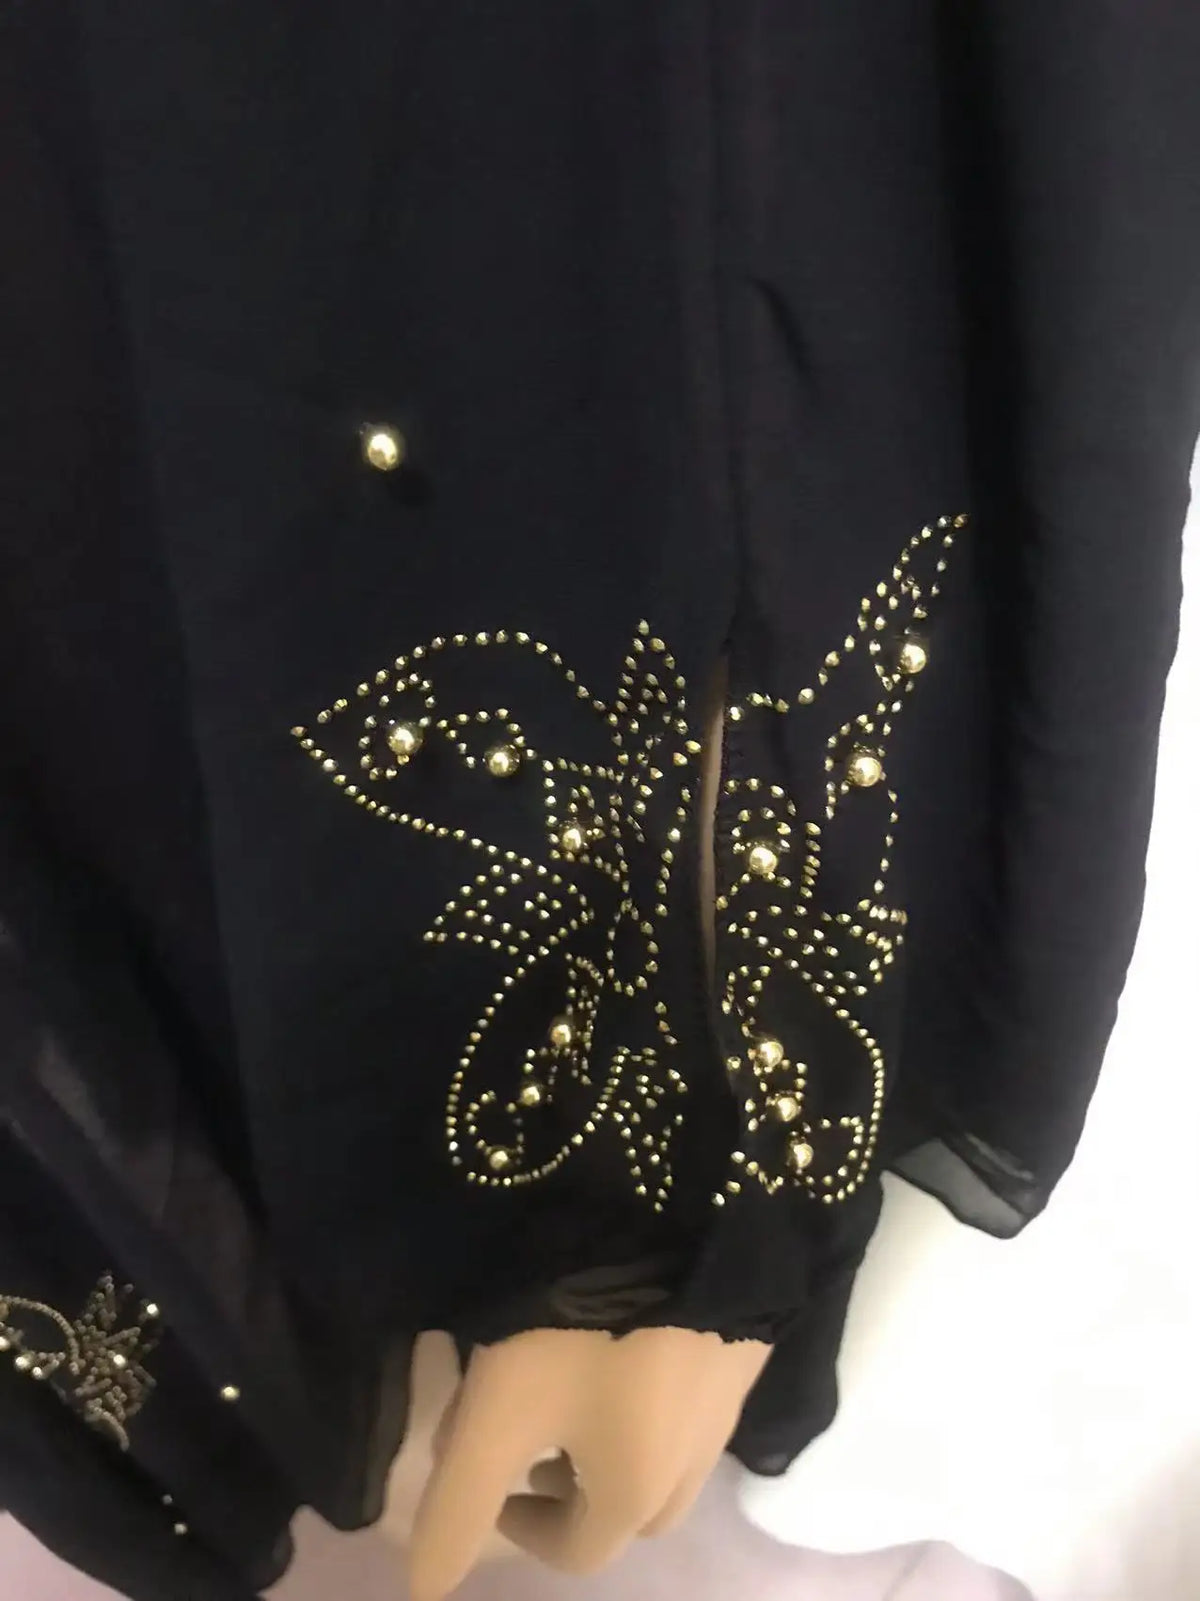 embroidery lace abaya